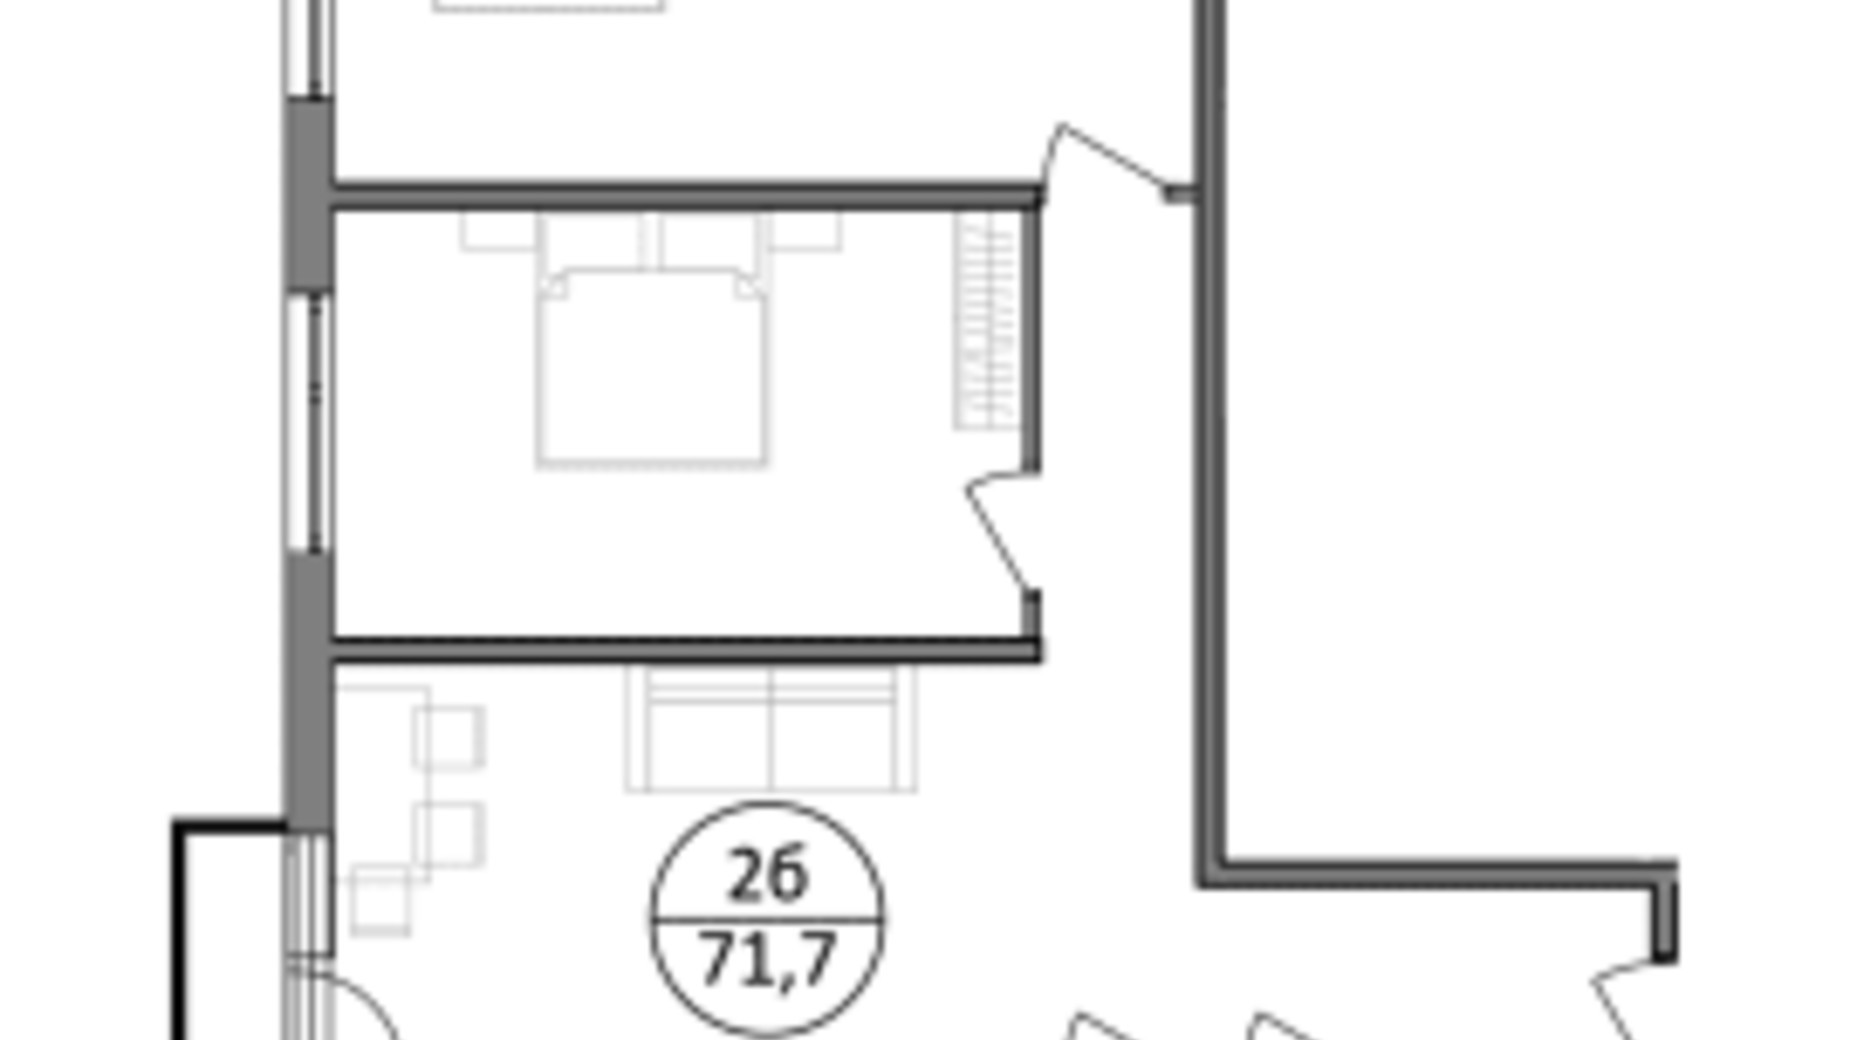 Планування 2-кімнатної квартири в ЖК Парксайд 71.7 м², фото 562088